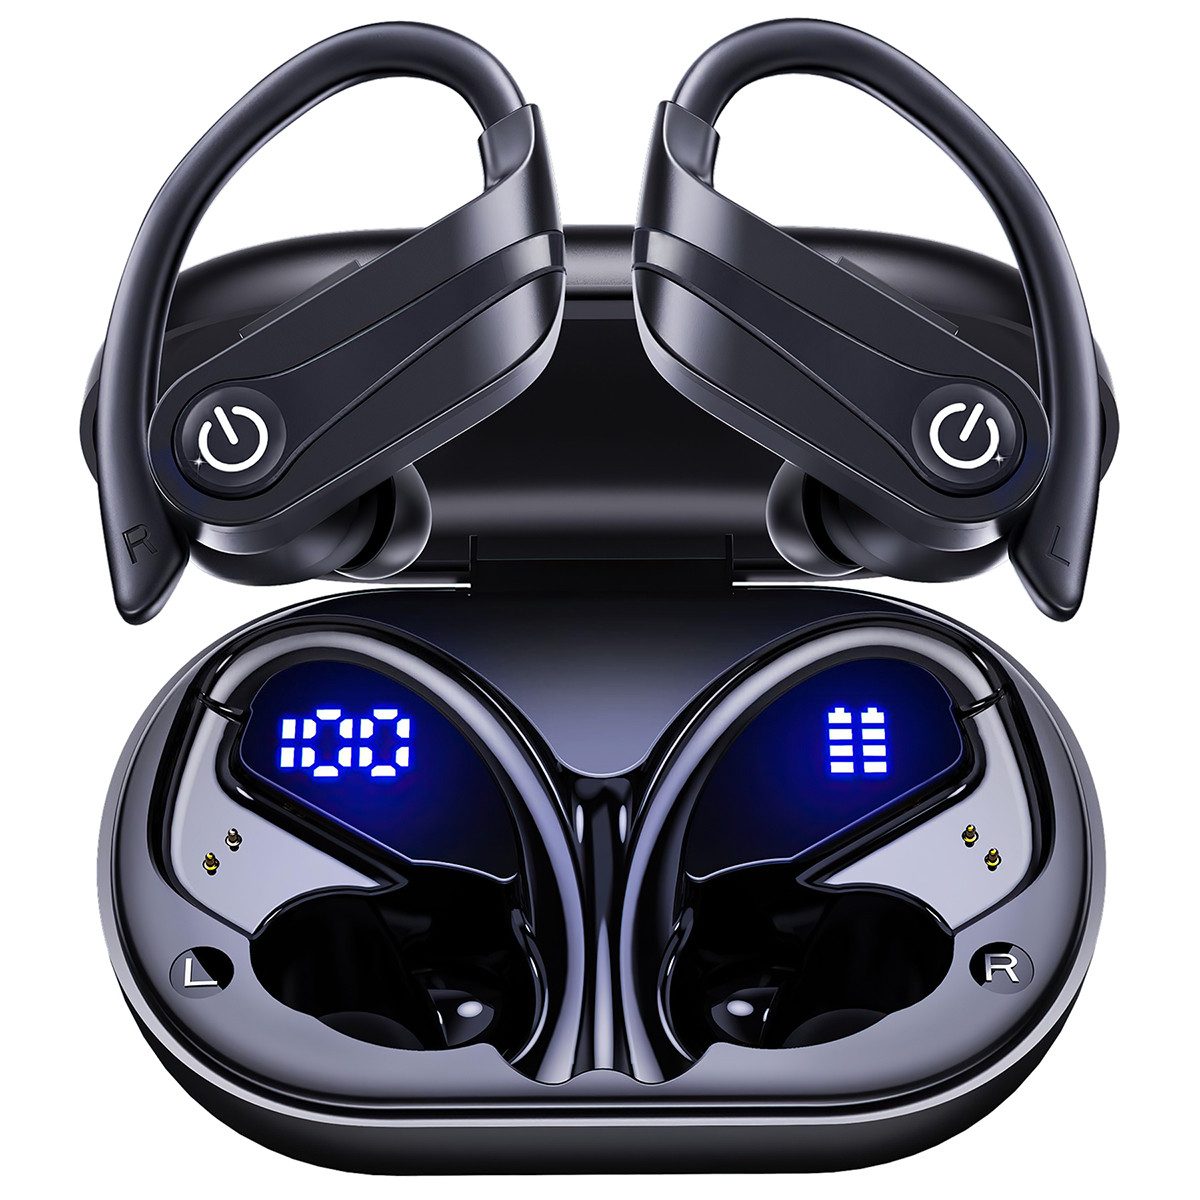 Cbei Kabelloses Bluetooth-Headset wireless In-Ear-Kopfhörer Sport-Kopfhörer In-Ear-Kopfhörer (Ladeetui mit LED Anzeige,Bluetooth 5.3, am Ohr montierte Sportgeräuschunterdrückung,wasserdicht IPX7,Geräuschreduzierung, Ideal for running, training, gym, traveling, even rainy days)